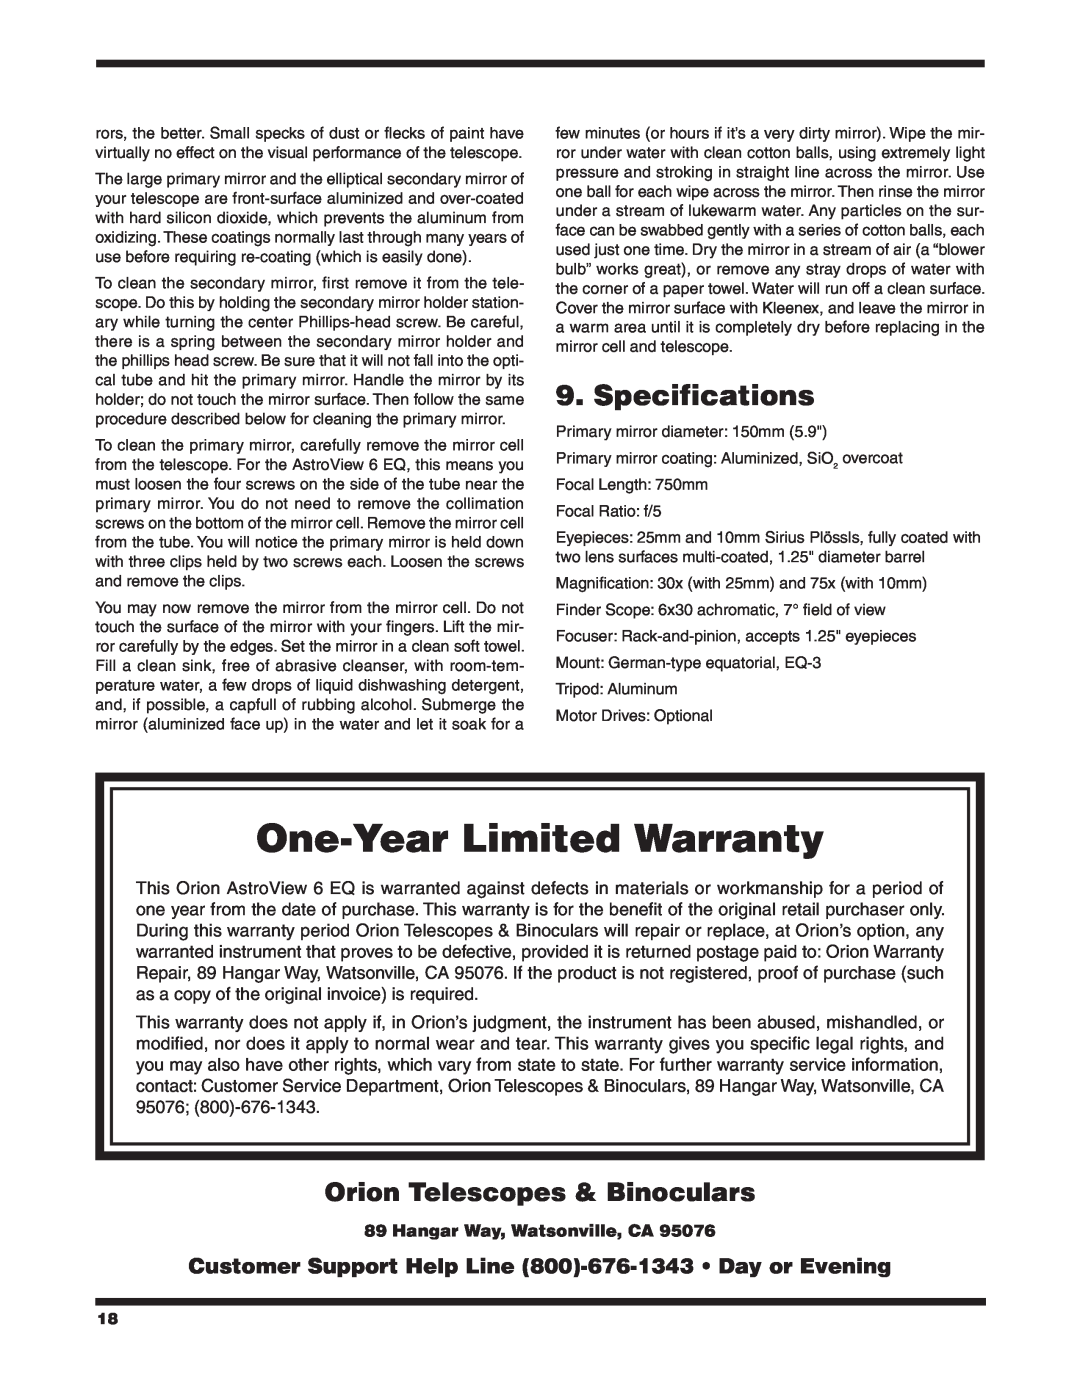 Orion 9827 Specifications, Orion Telescopes & Binoculars, Hangar Way, Watsonville, CA, One-Year Limited Warranty 